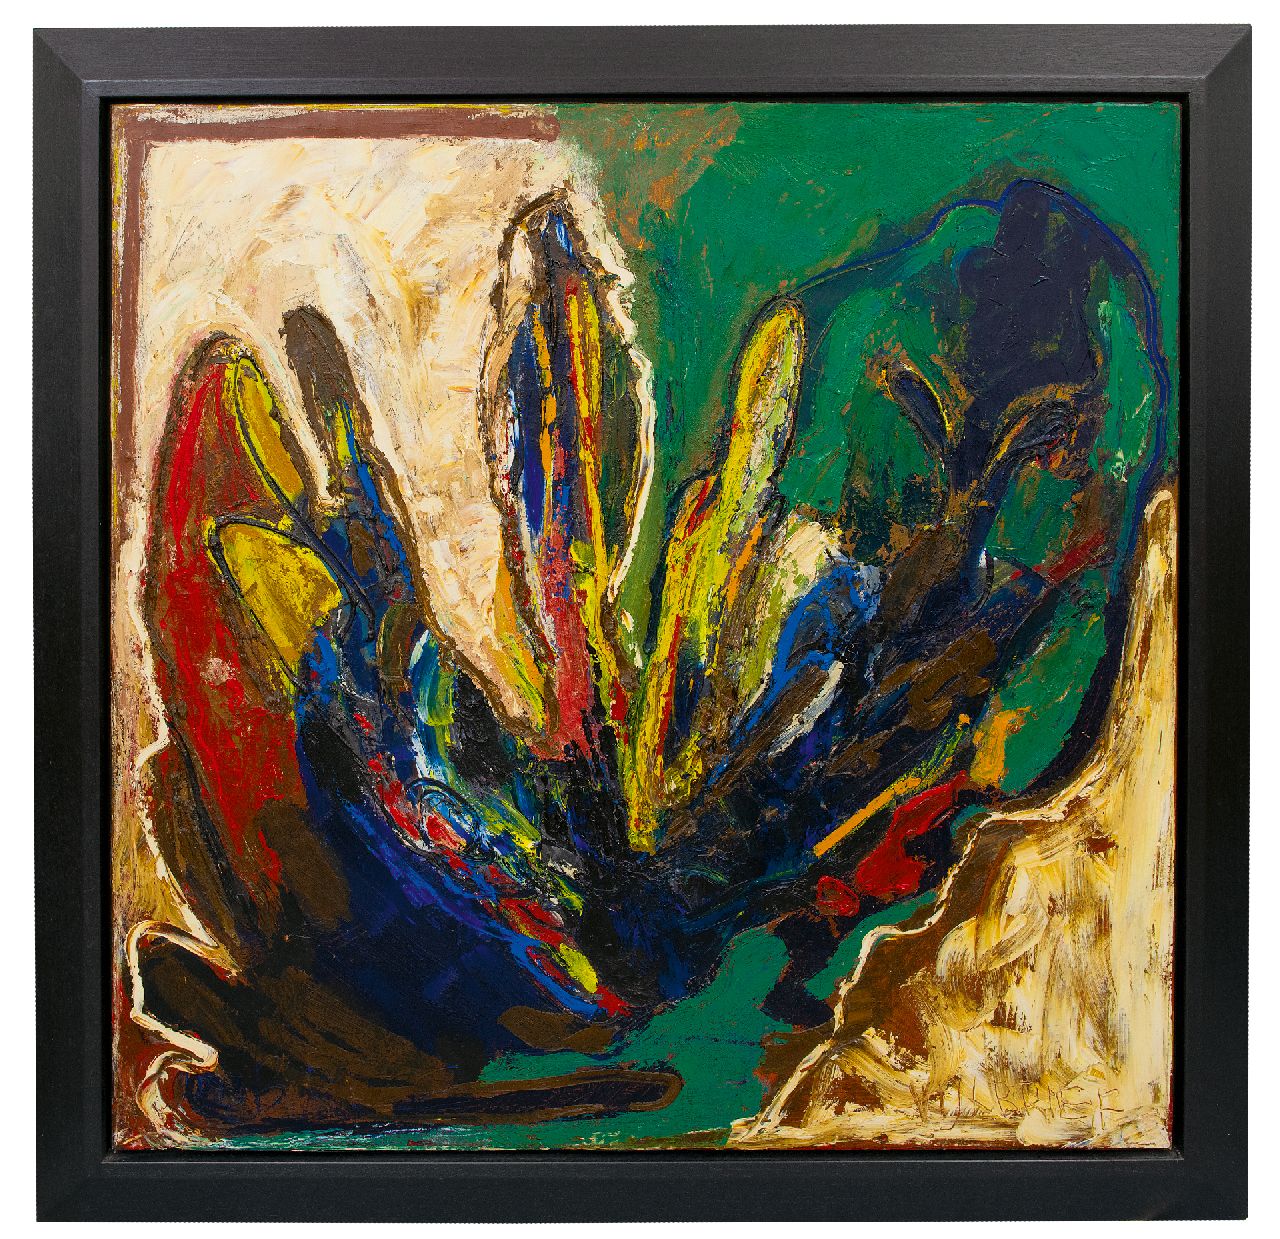 Vijlbrief E.  | Ernst Vijlbrief | Schilderijen te koop aangeboden | Untitled, olieverf op doek 100,4 x 100,4 cm, gesigneerd rechtsonder